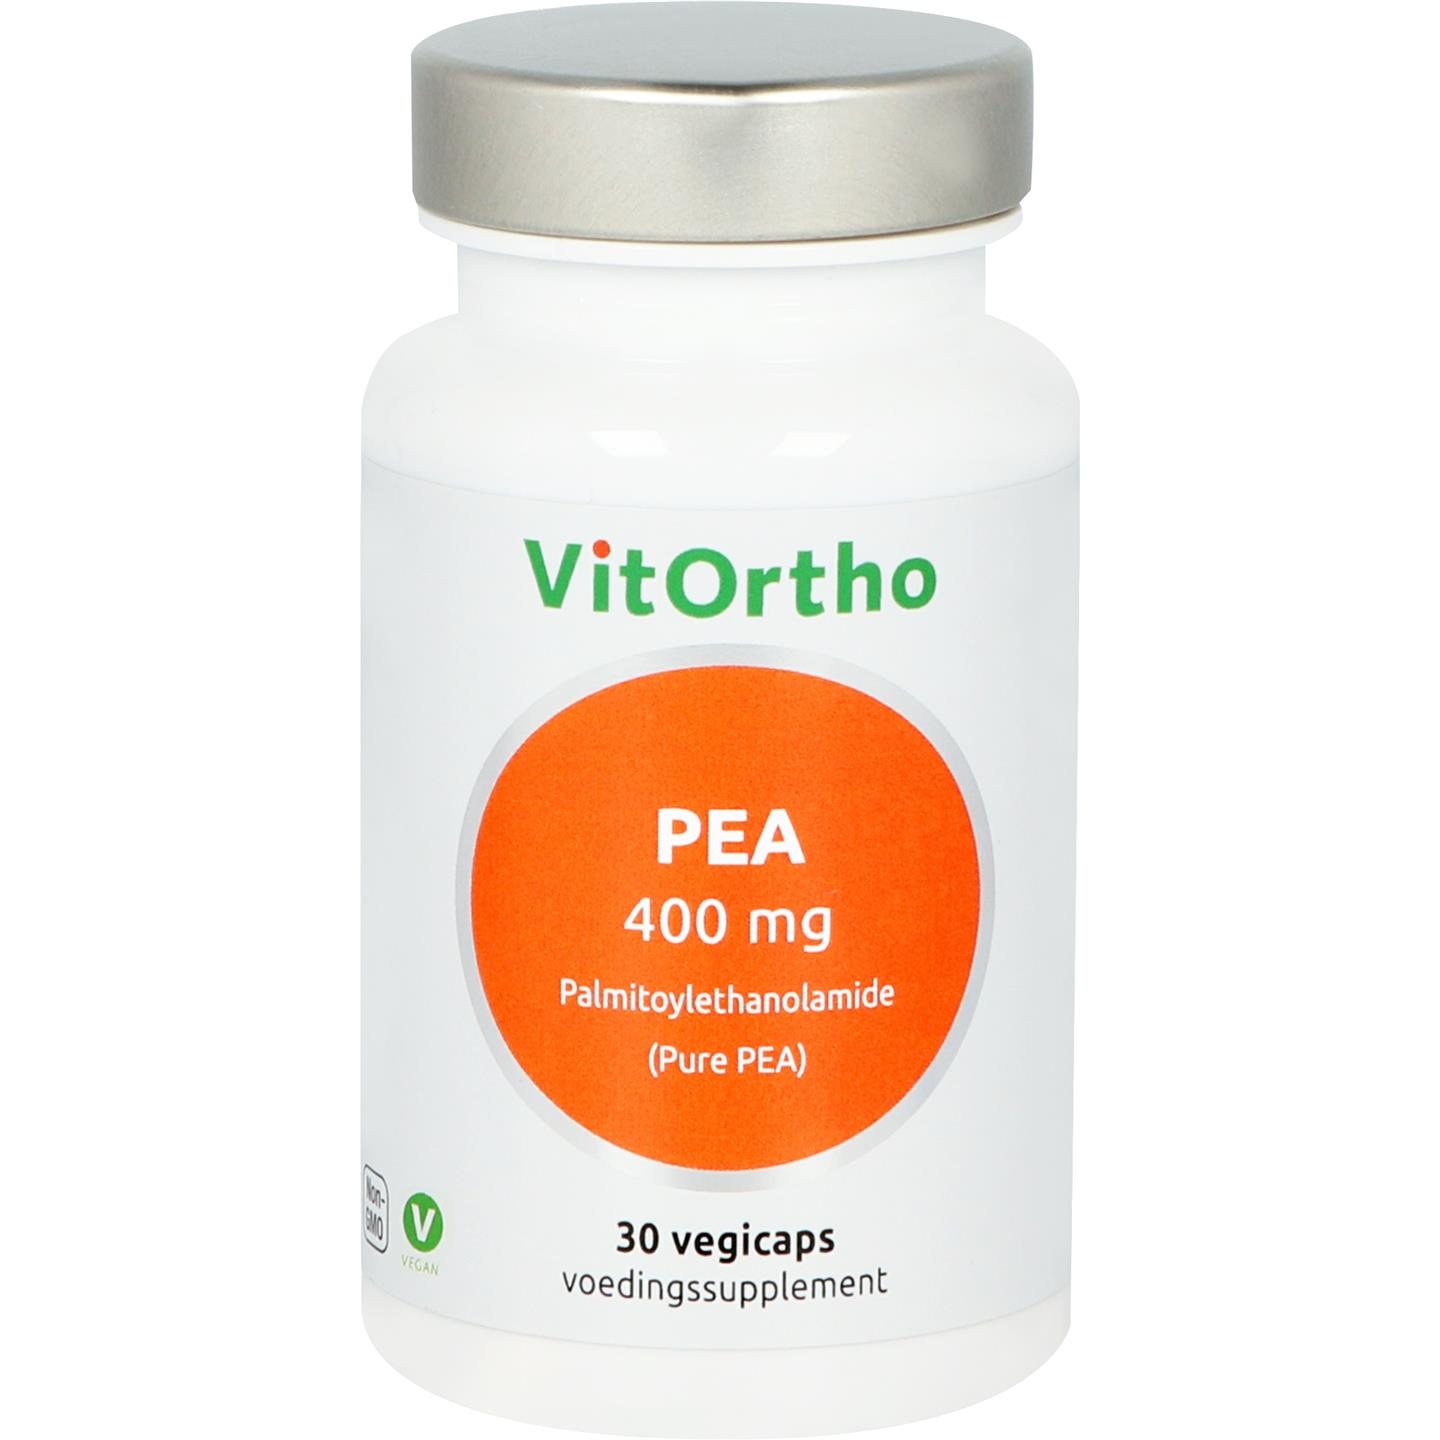 Vitortho VitOrtho PEA 400 mg Palmitoylethanolamid (30 vegetarische Kapseln)